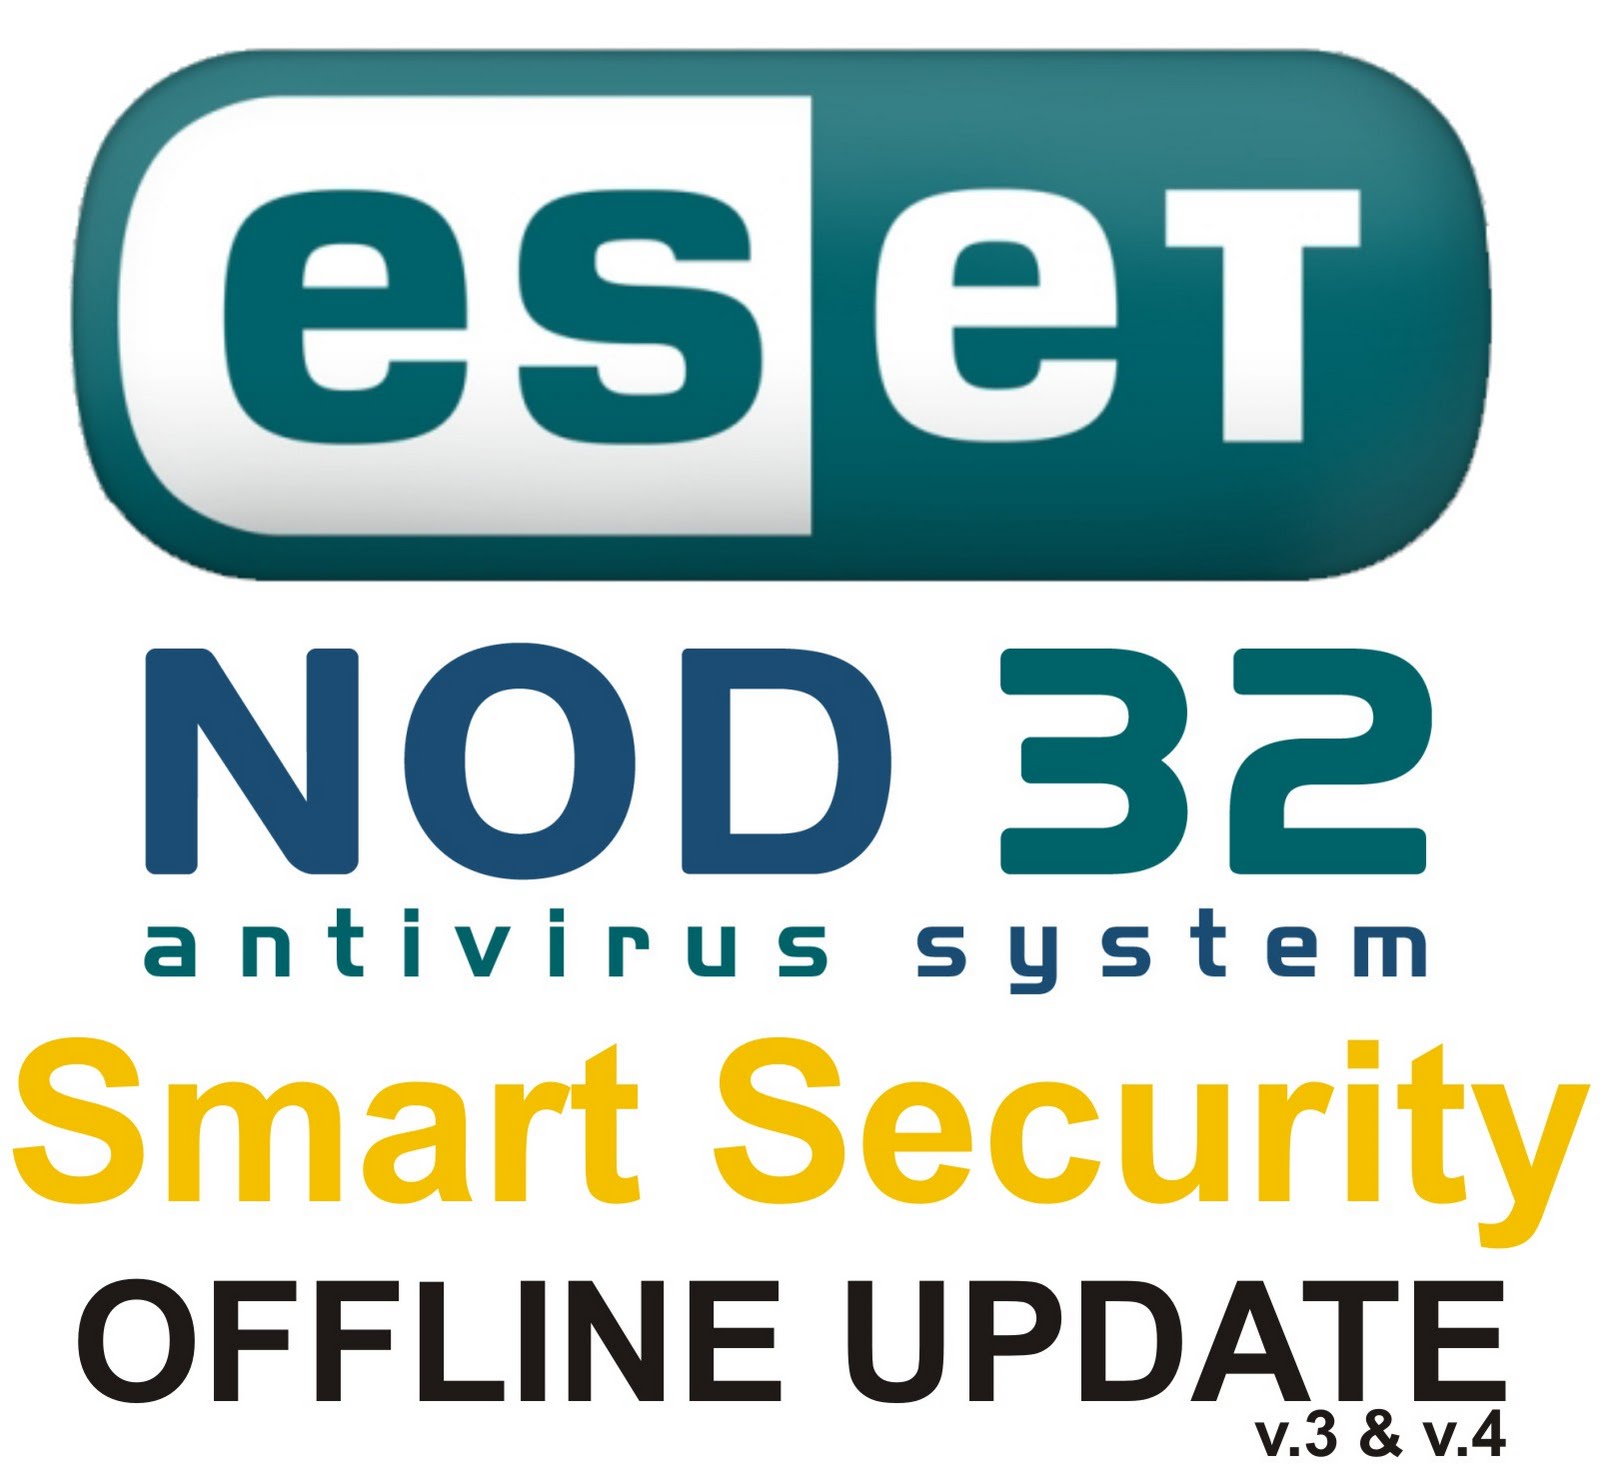 НОД 32 антивирус оффлайн обновления базы.